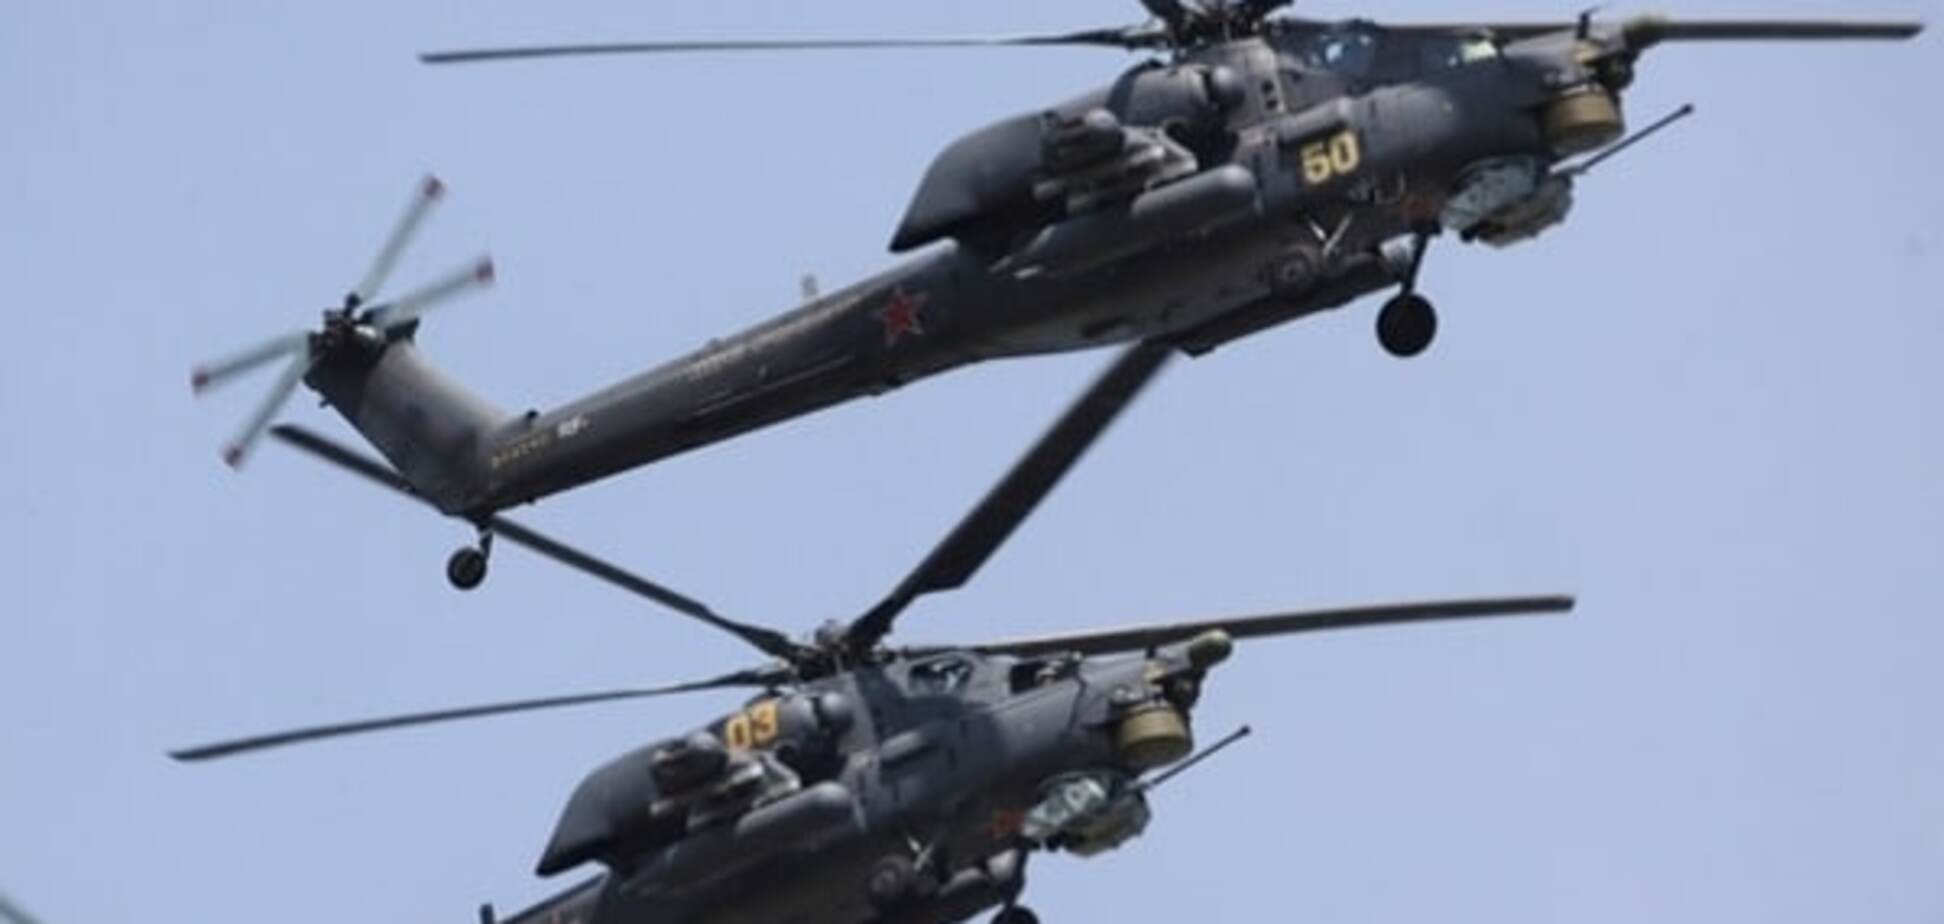 Над поселениями крымских татар все чаще замечают военные вертолеты - Чубаров